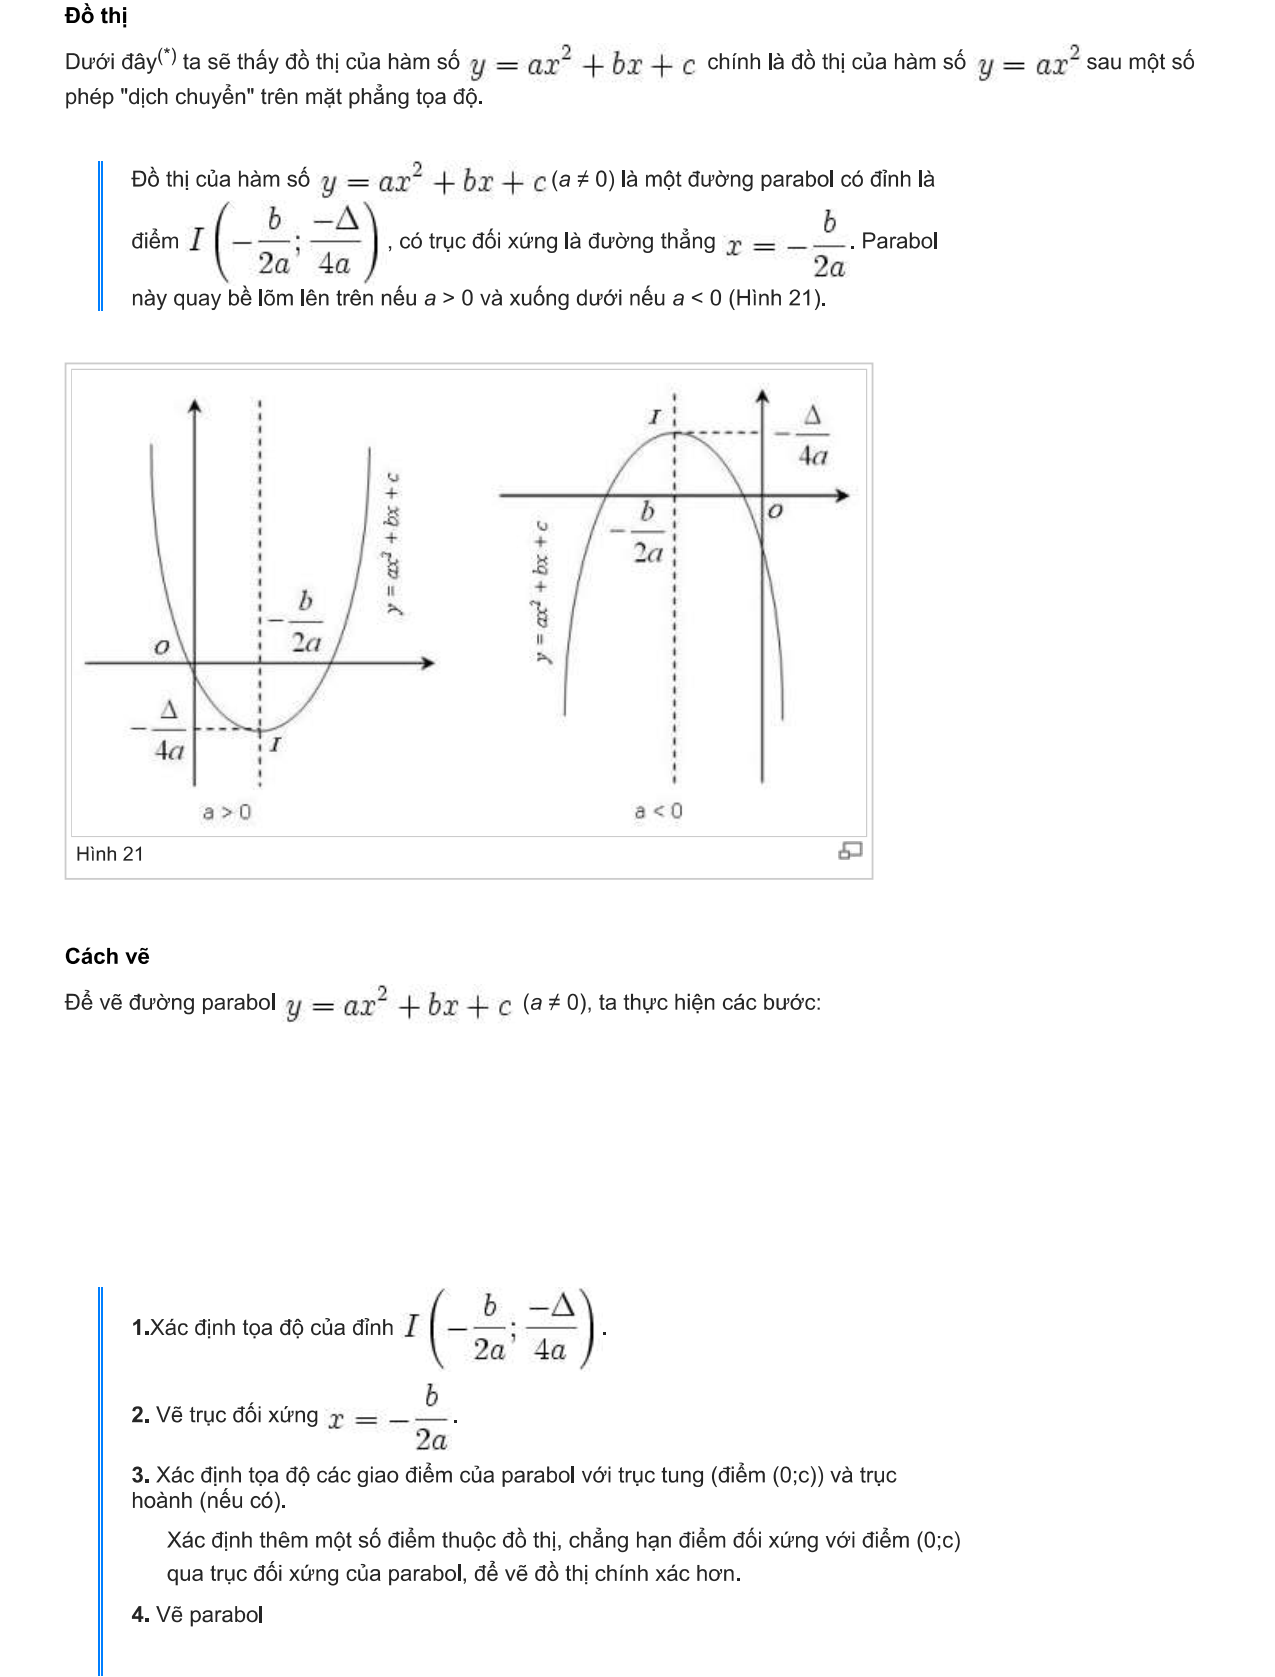 cách vẽ parabol 6